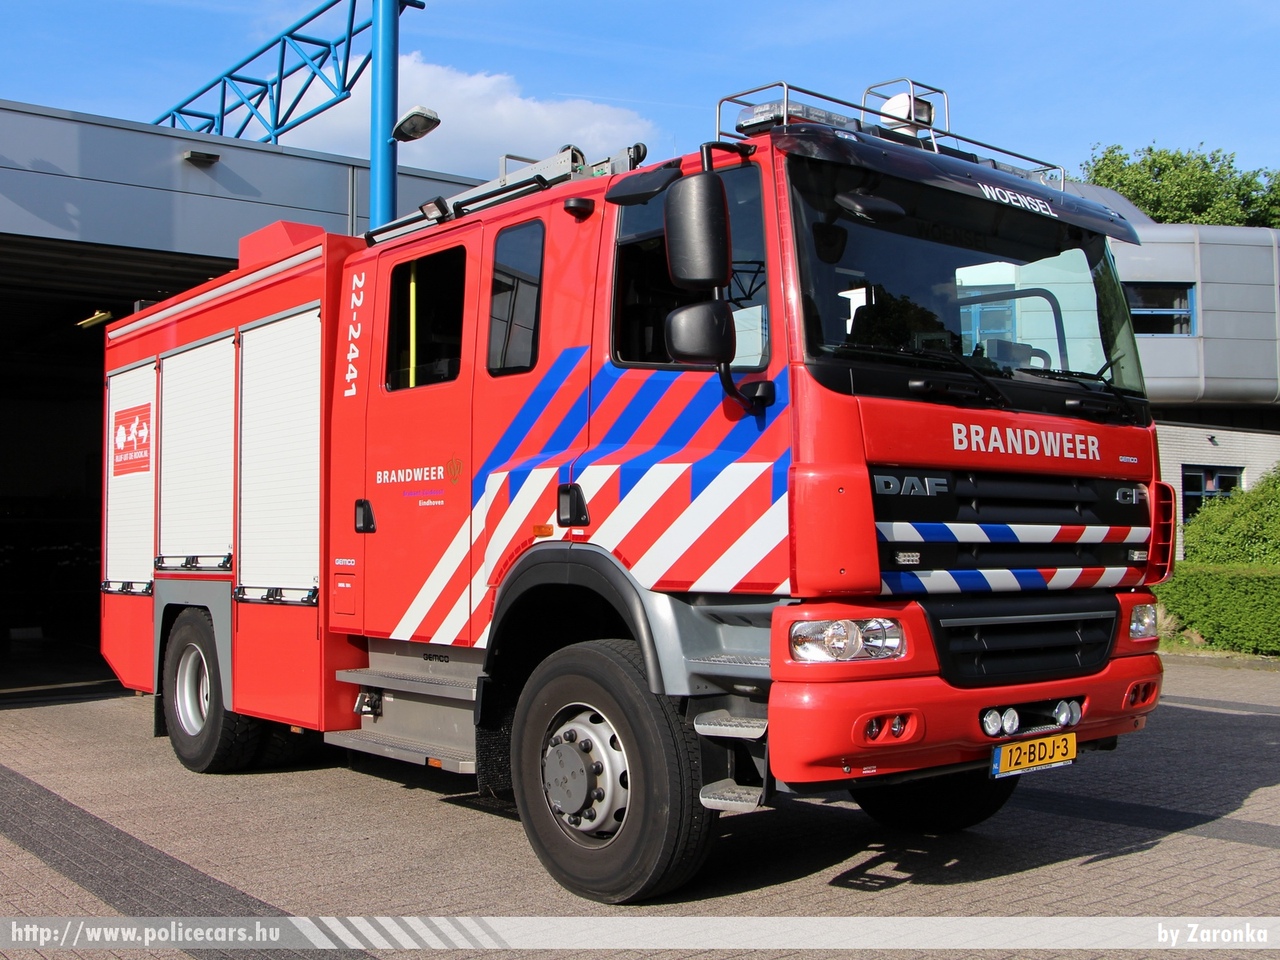 DAF CF, fotó: Zaronka
Keywords: holland Hollandia tûzoltó tûzoltóautó tûzoltóság Netherlands Dutch fire firetruck